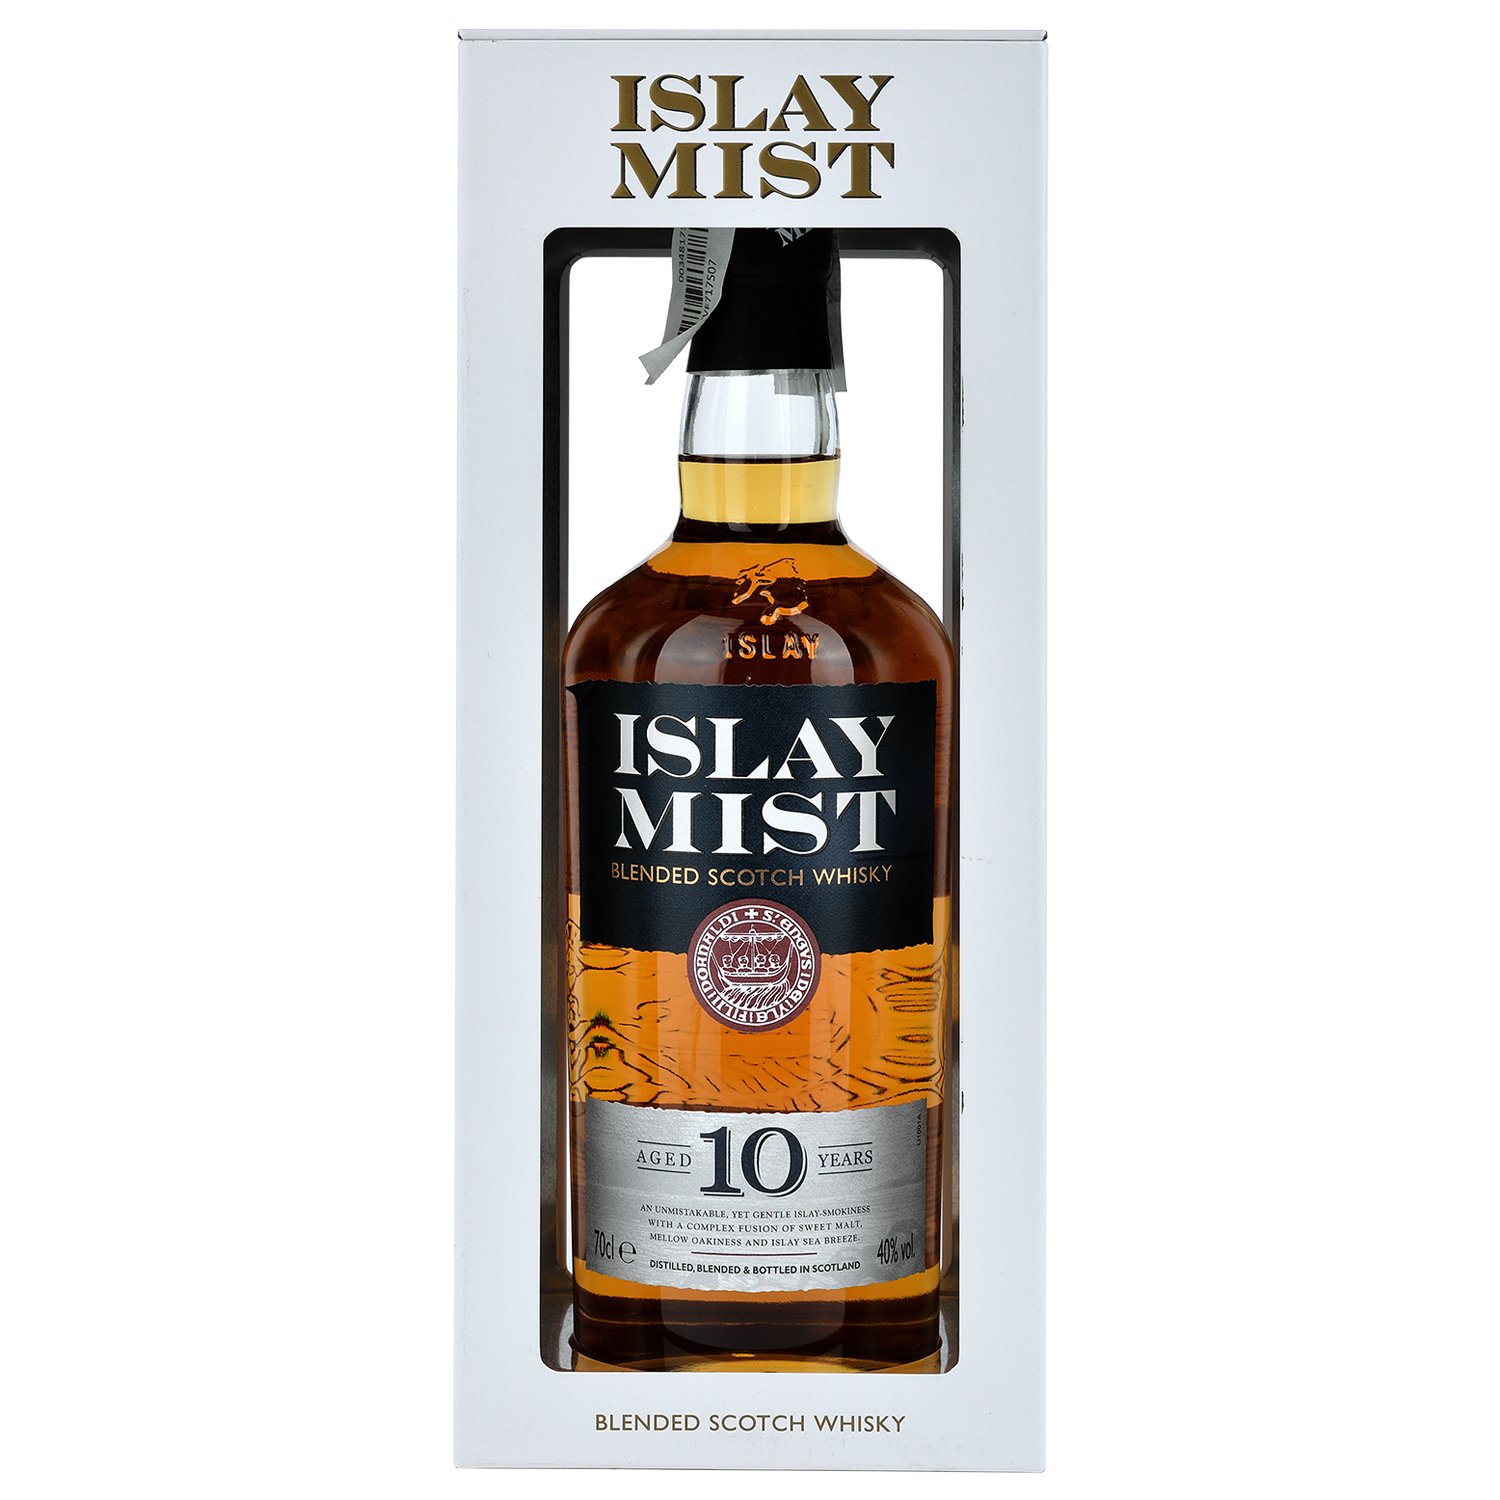 Віскі Islay Mist Blended Scotch Whisky 10 yo, в подарунковій упаковці, 40%, 0,7 л - фото 1